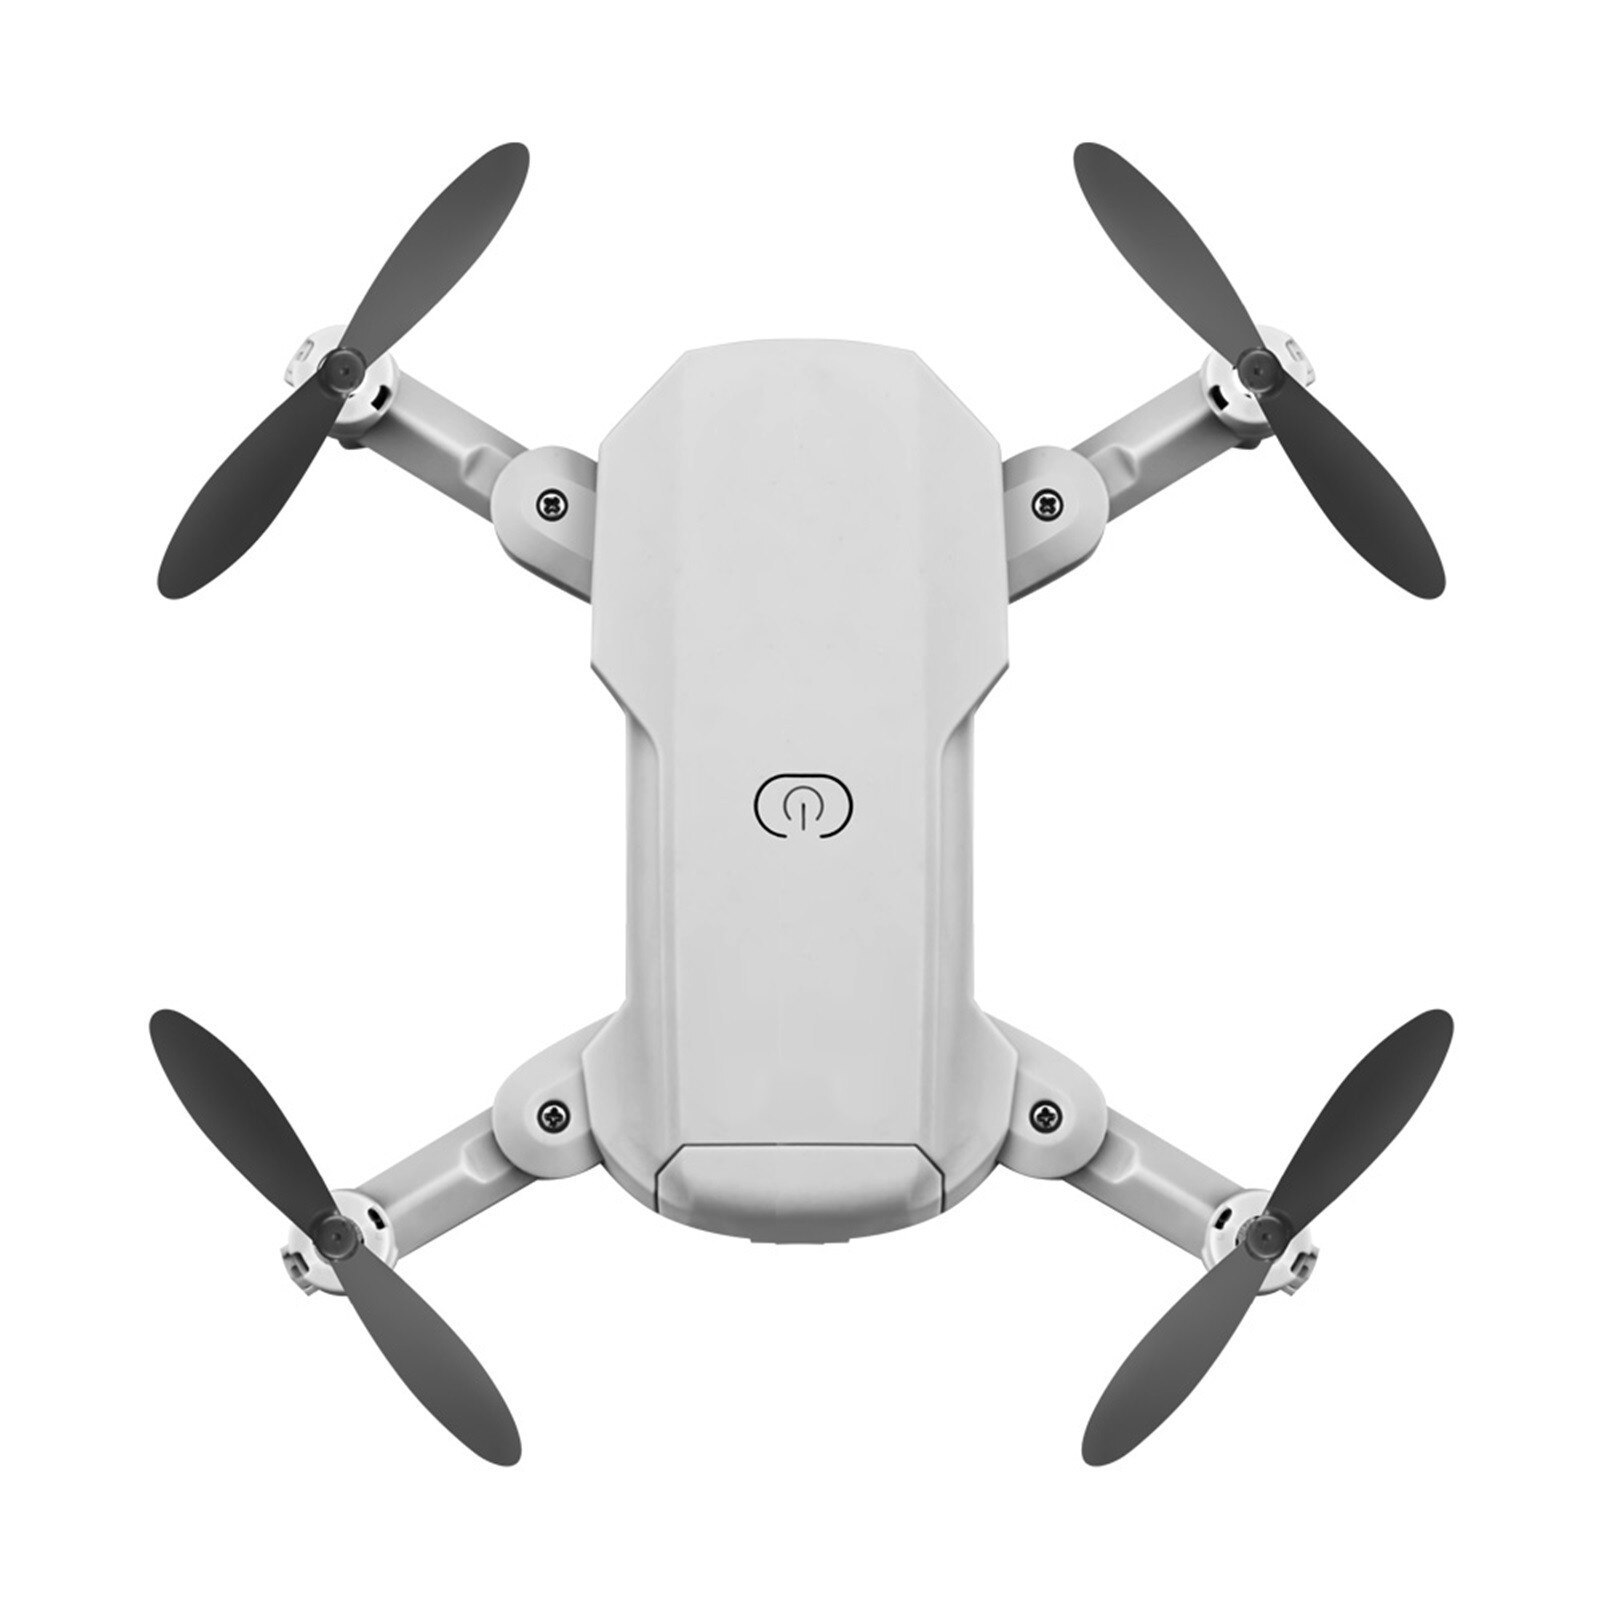 Lsrc Mini Drone 480p Hd Camera Rc Quadcopter Foldable Rc Drones Wifi